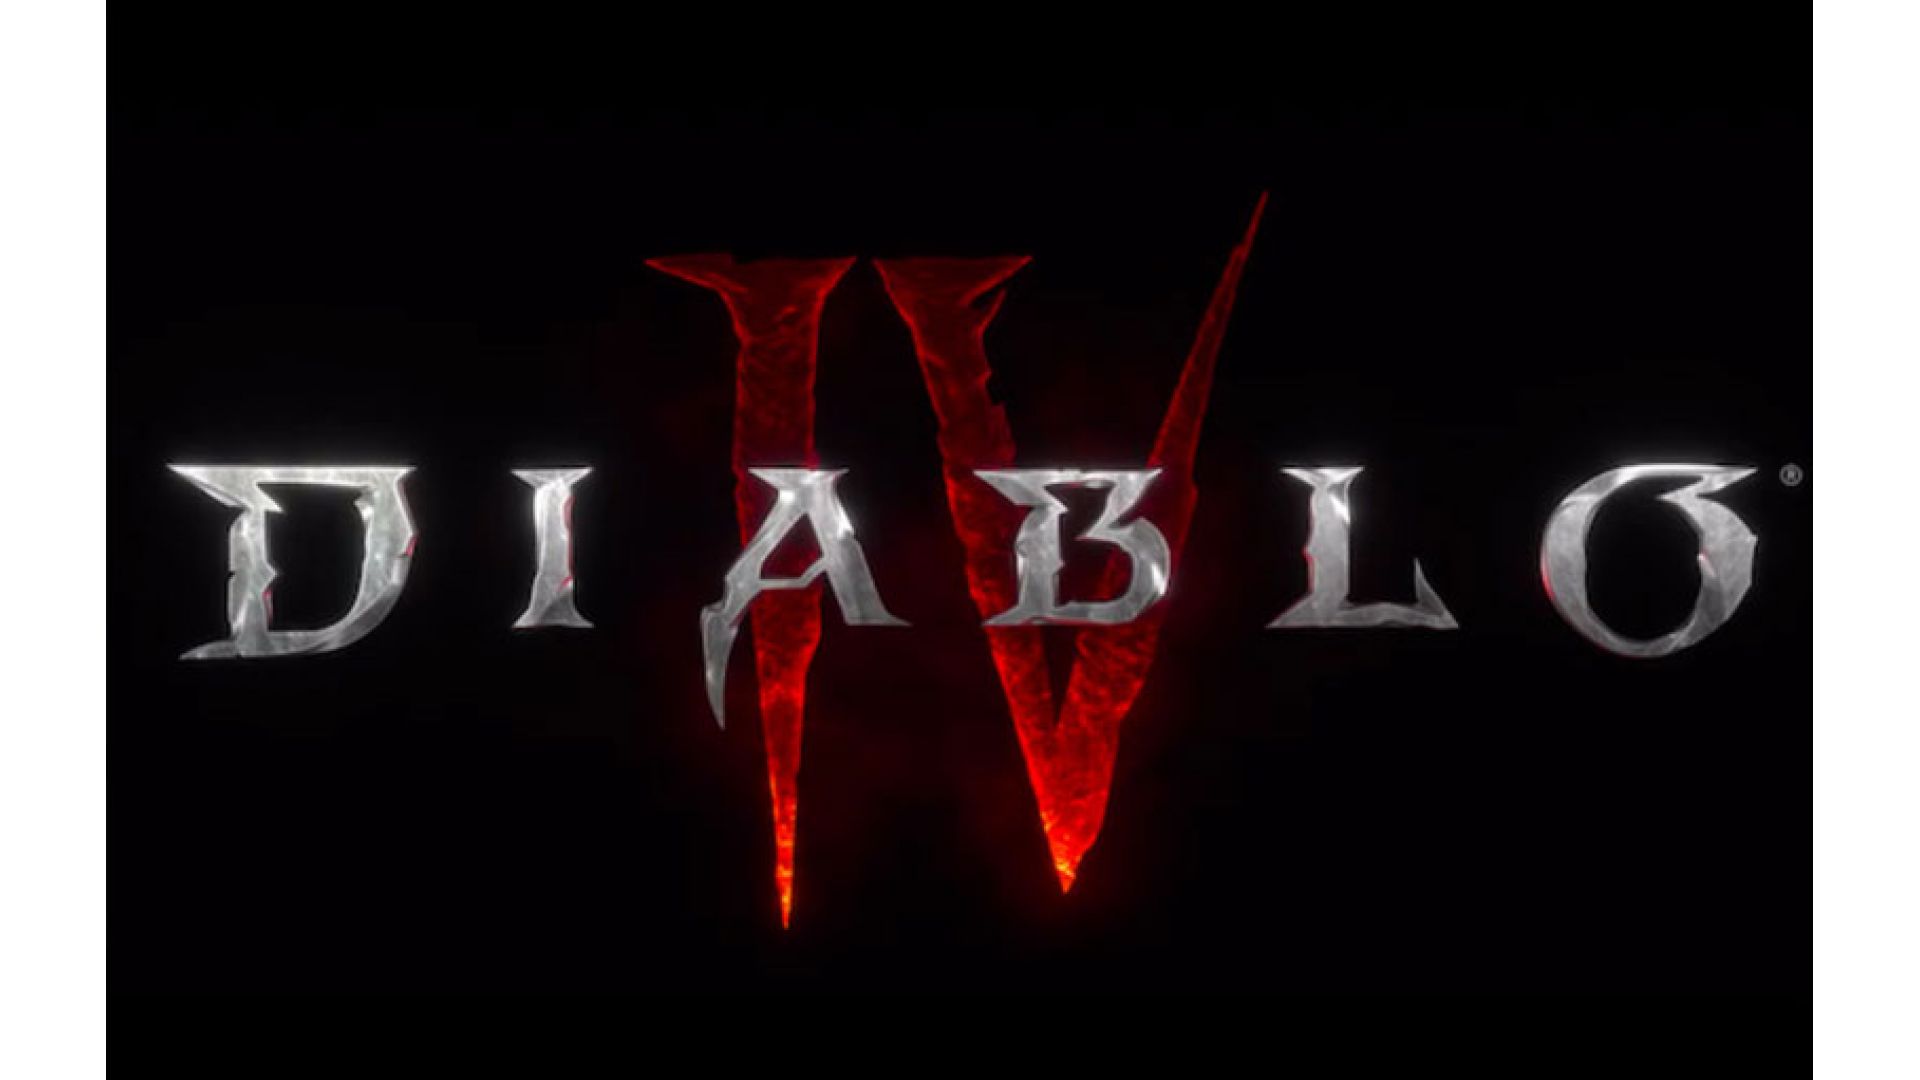 بازی Diablo 4 معرفی شد